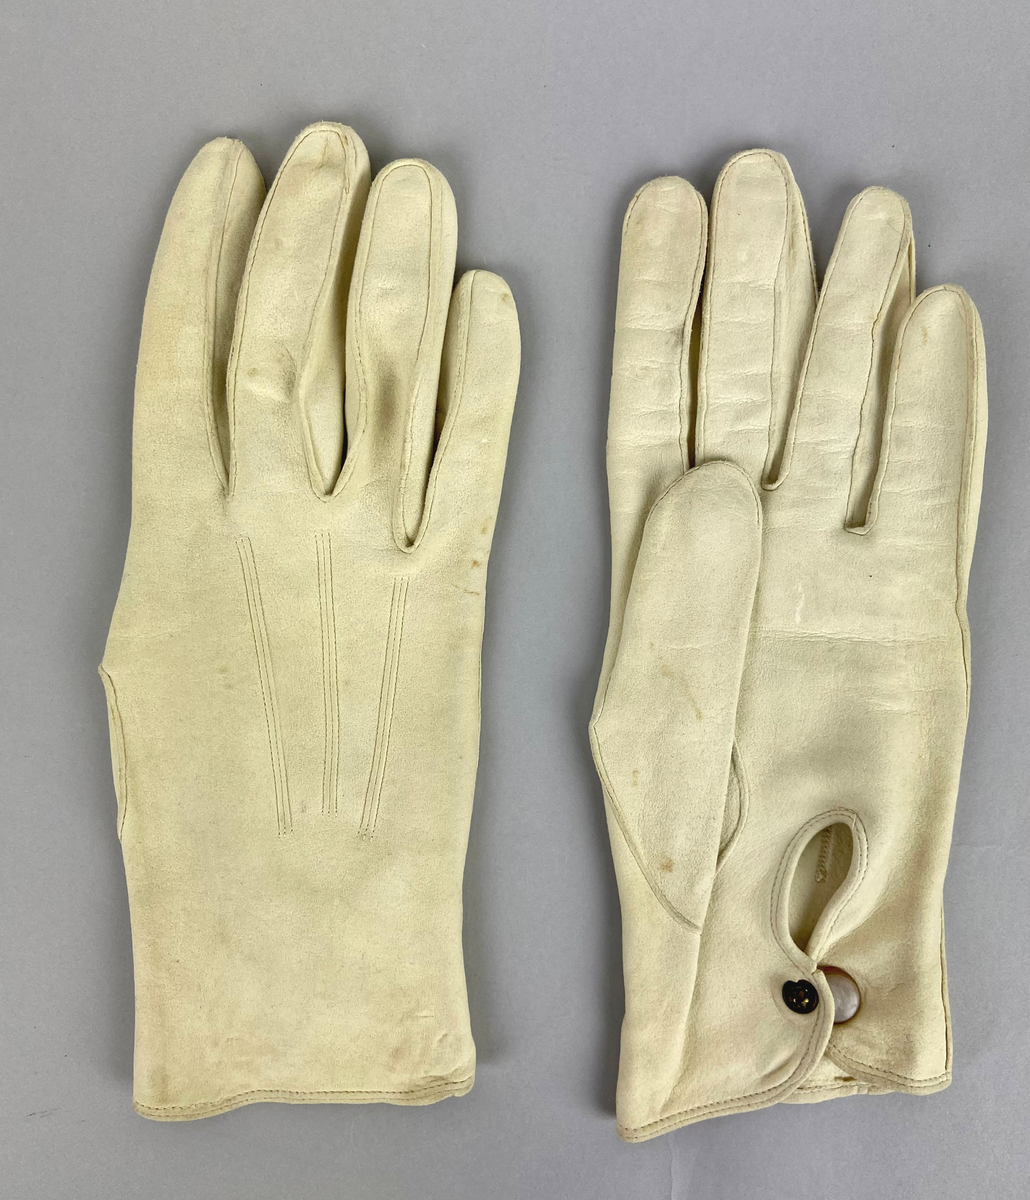 Handskar, tunna vita i sämskskinn. På översidan av handryggen är tre sömmar och på undersidan vid handleden knäpps handskarna med en vit knapp. Avsedda för trupparad och högtidsdräkt, sommartid